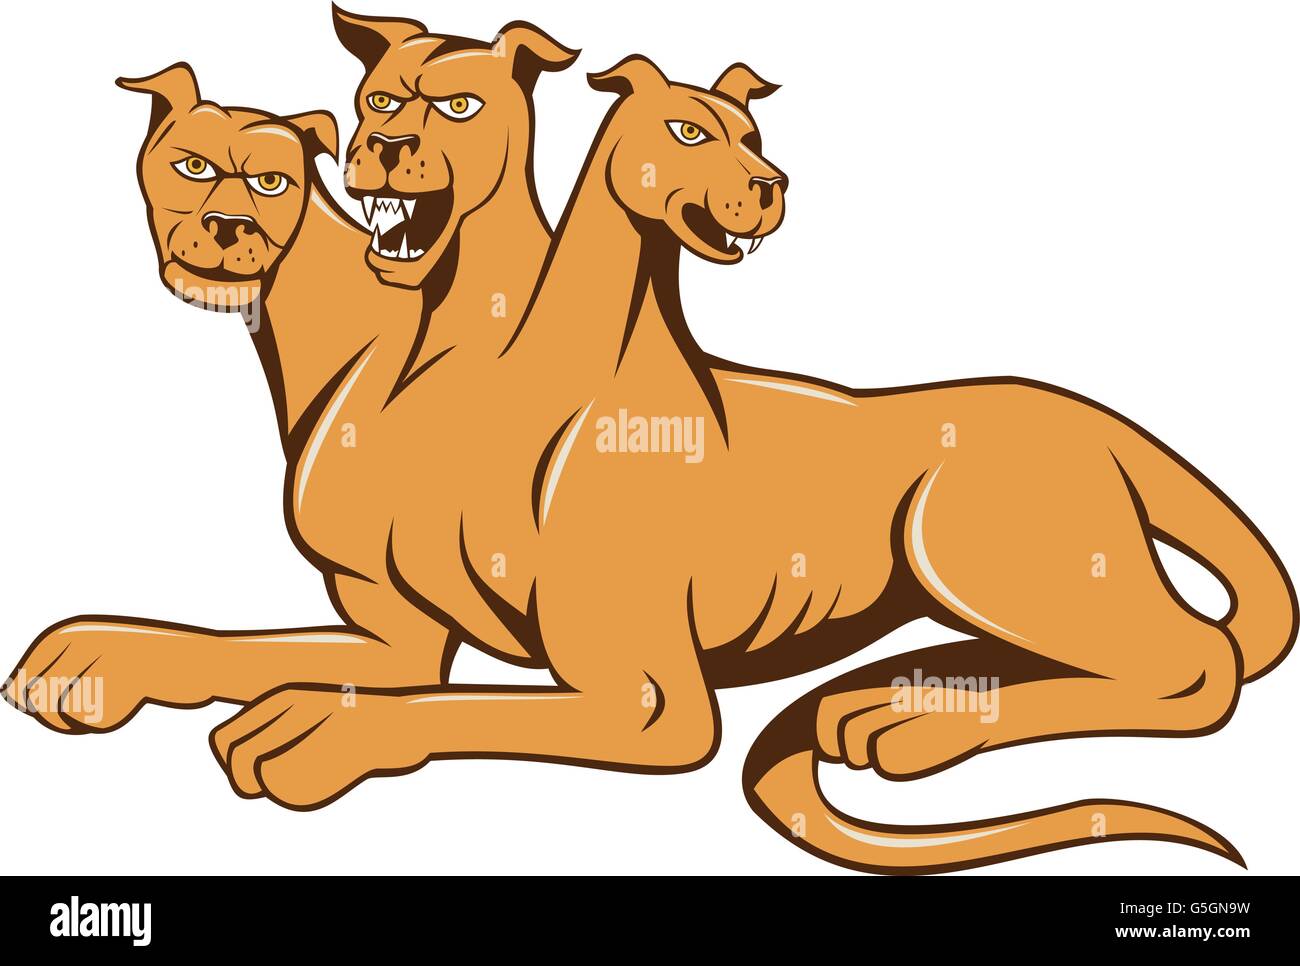 Illustrazione di cerberus, nella mitologia greca e romana, un multi-guidato in genere di tre teste di cane o hellhound con un serpente t Illustrazione Vettoriale